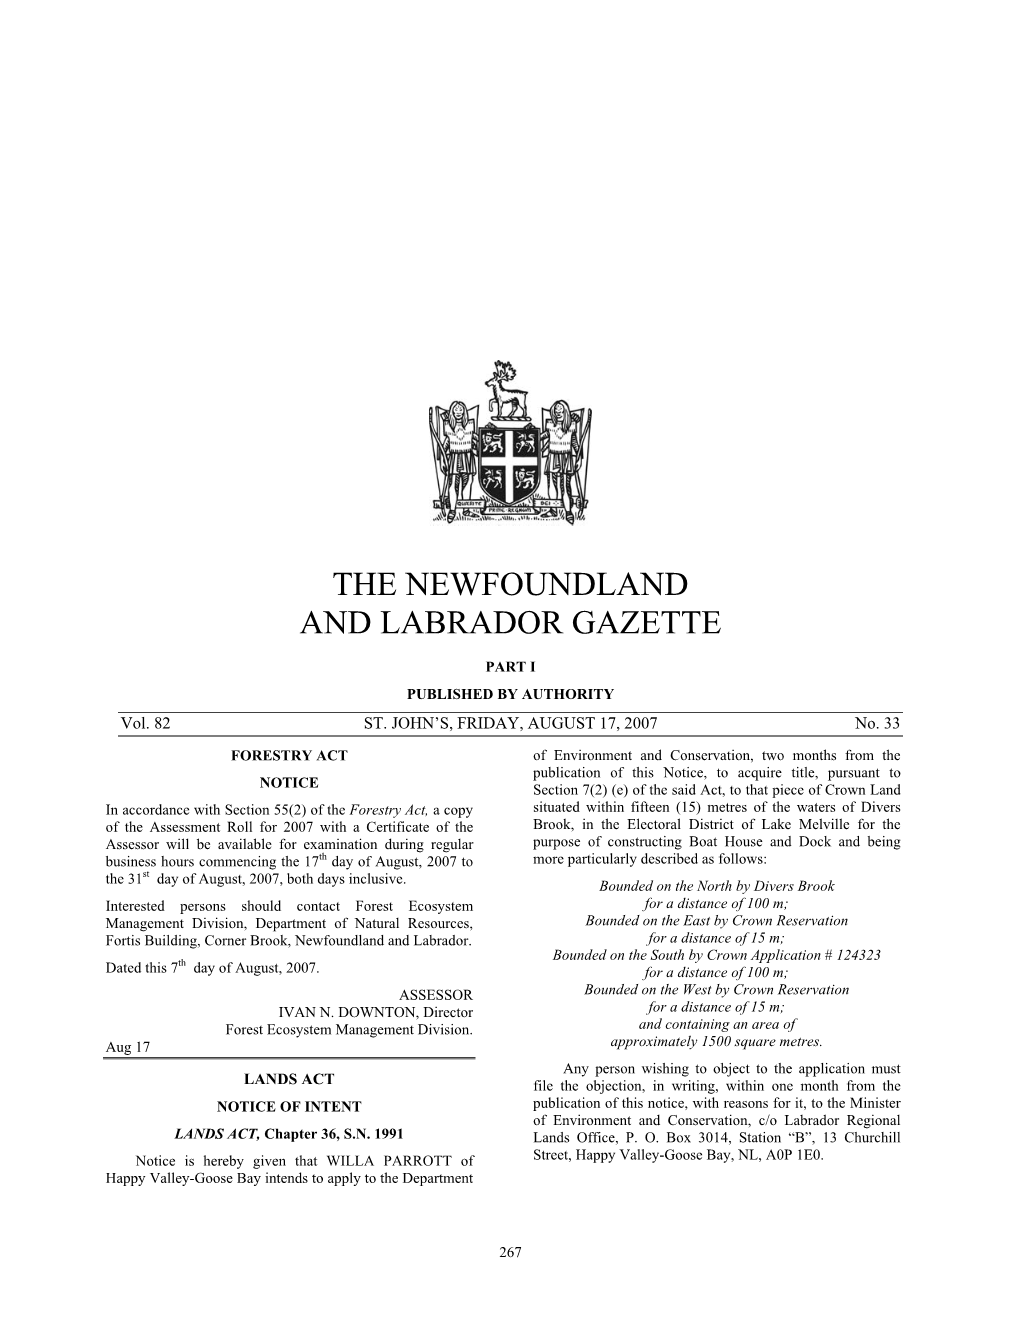 The Newfoundland and Labrador Gazette